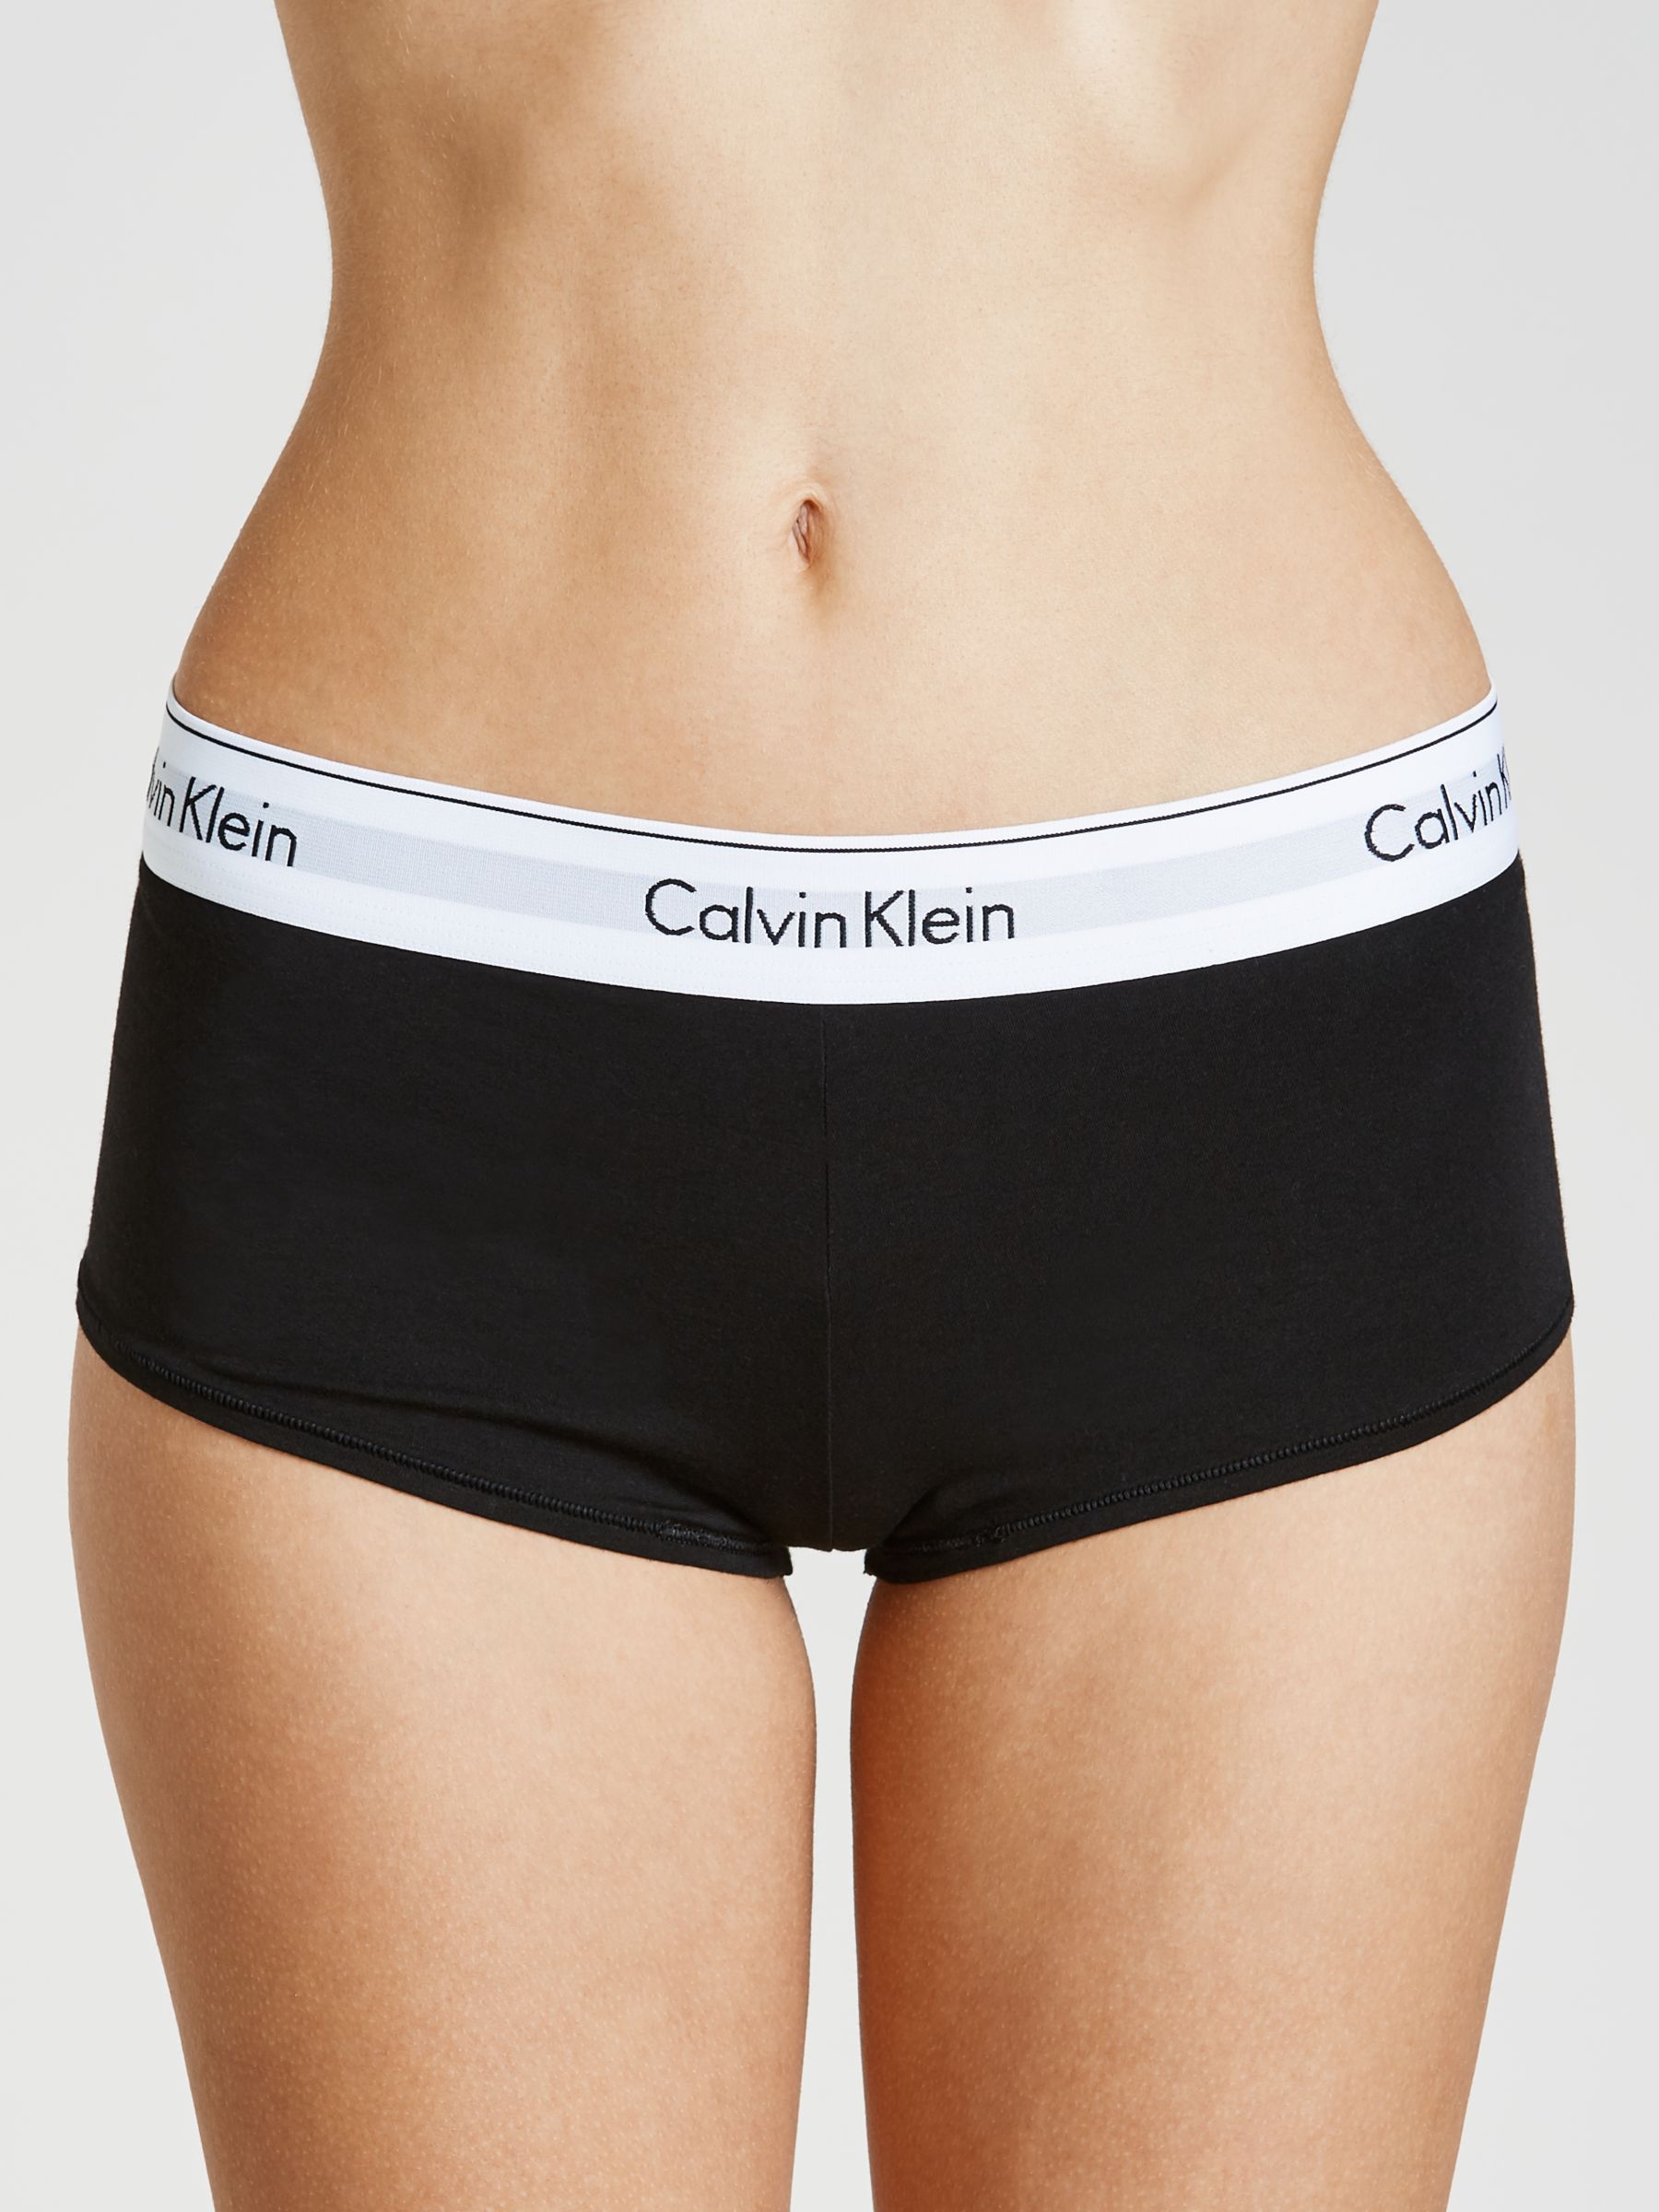 Calvin Klein Underwear Modern Cotton Short Briefs, Black